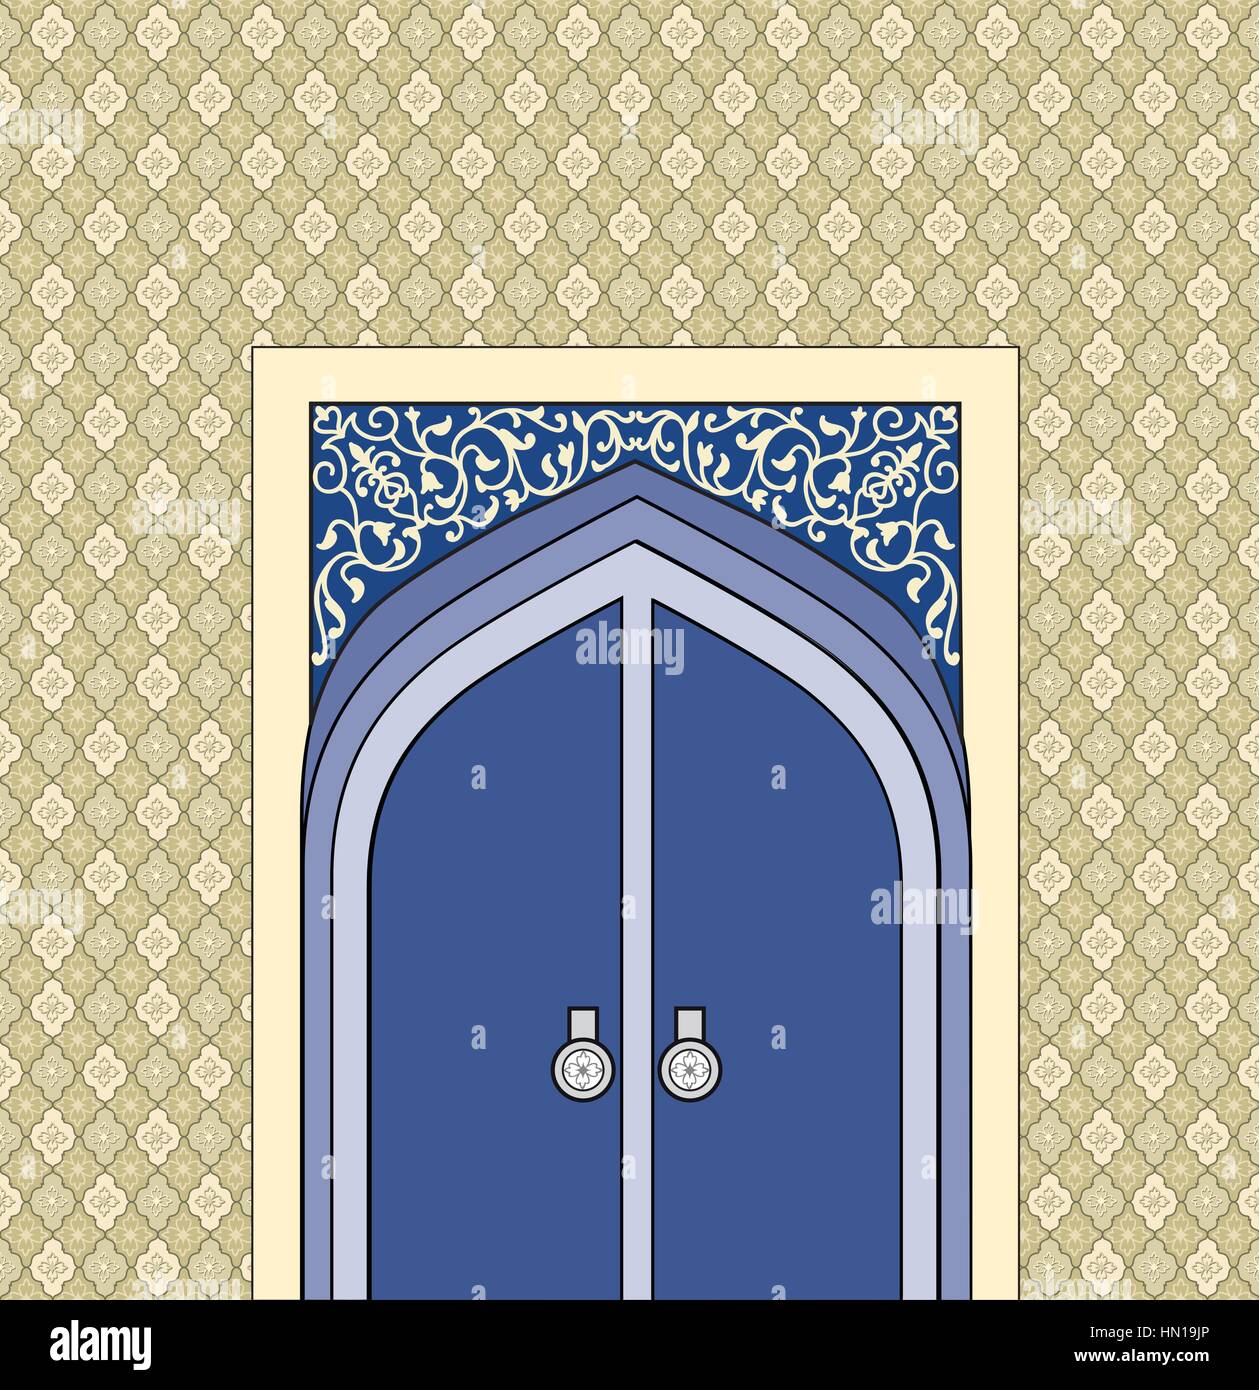 Porte en arabe style architectural. arche de pierre à motifs avec porte  fermée. la conception islamique de la porte de la mosquée de l'accueil  oriental. fond seamle Image Vectorielle Stock - Alamy